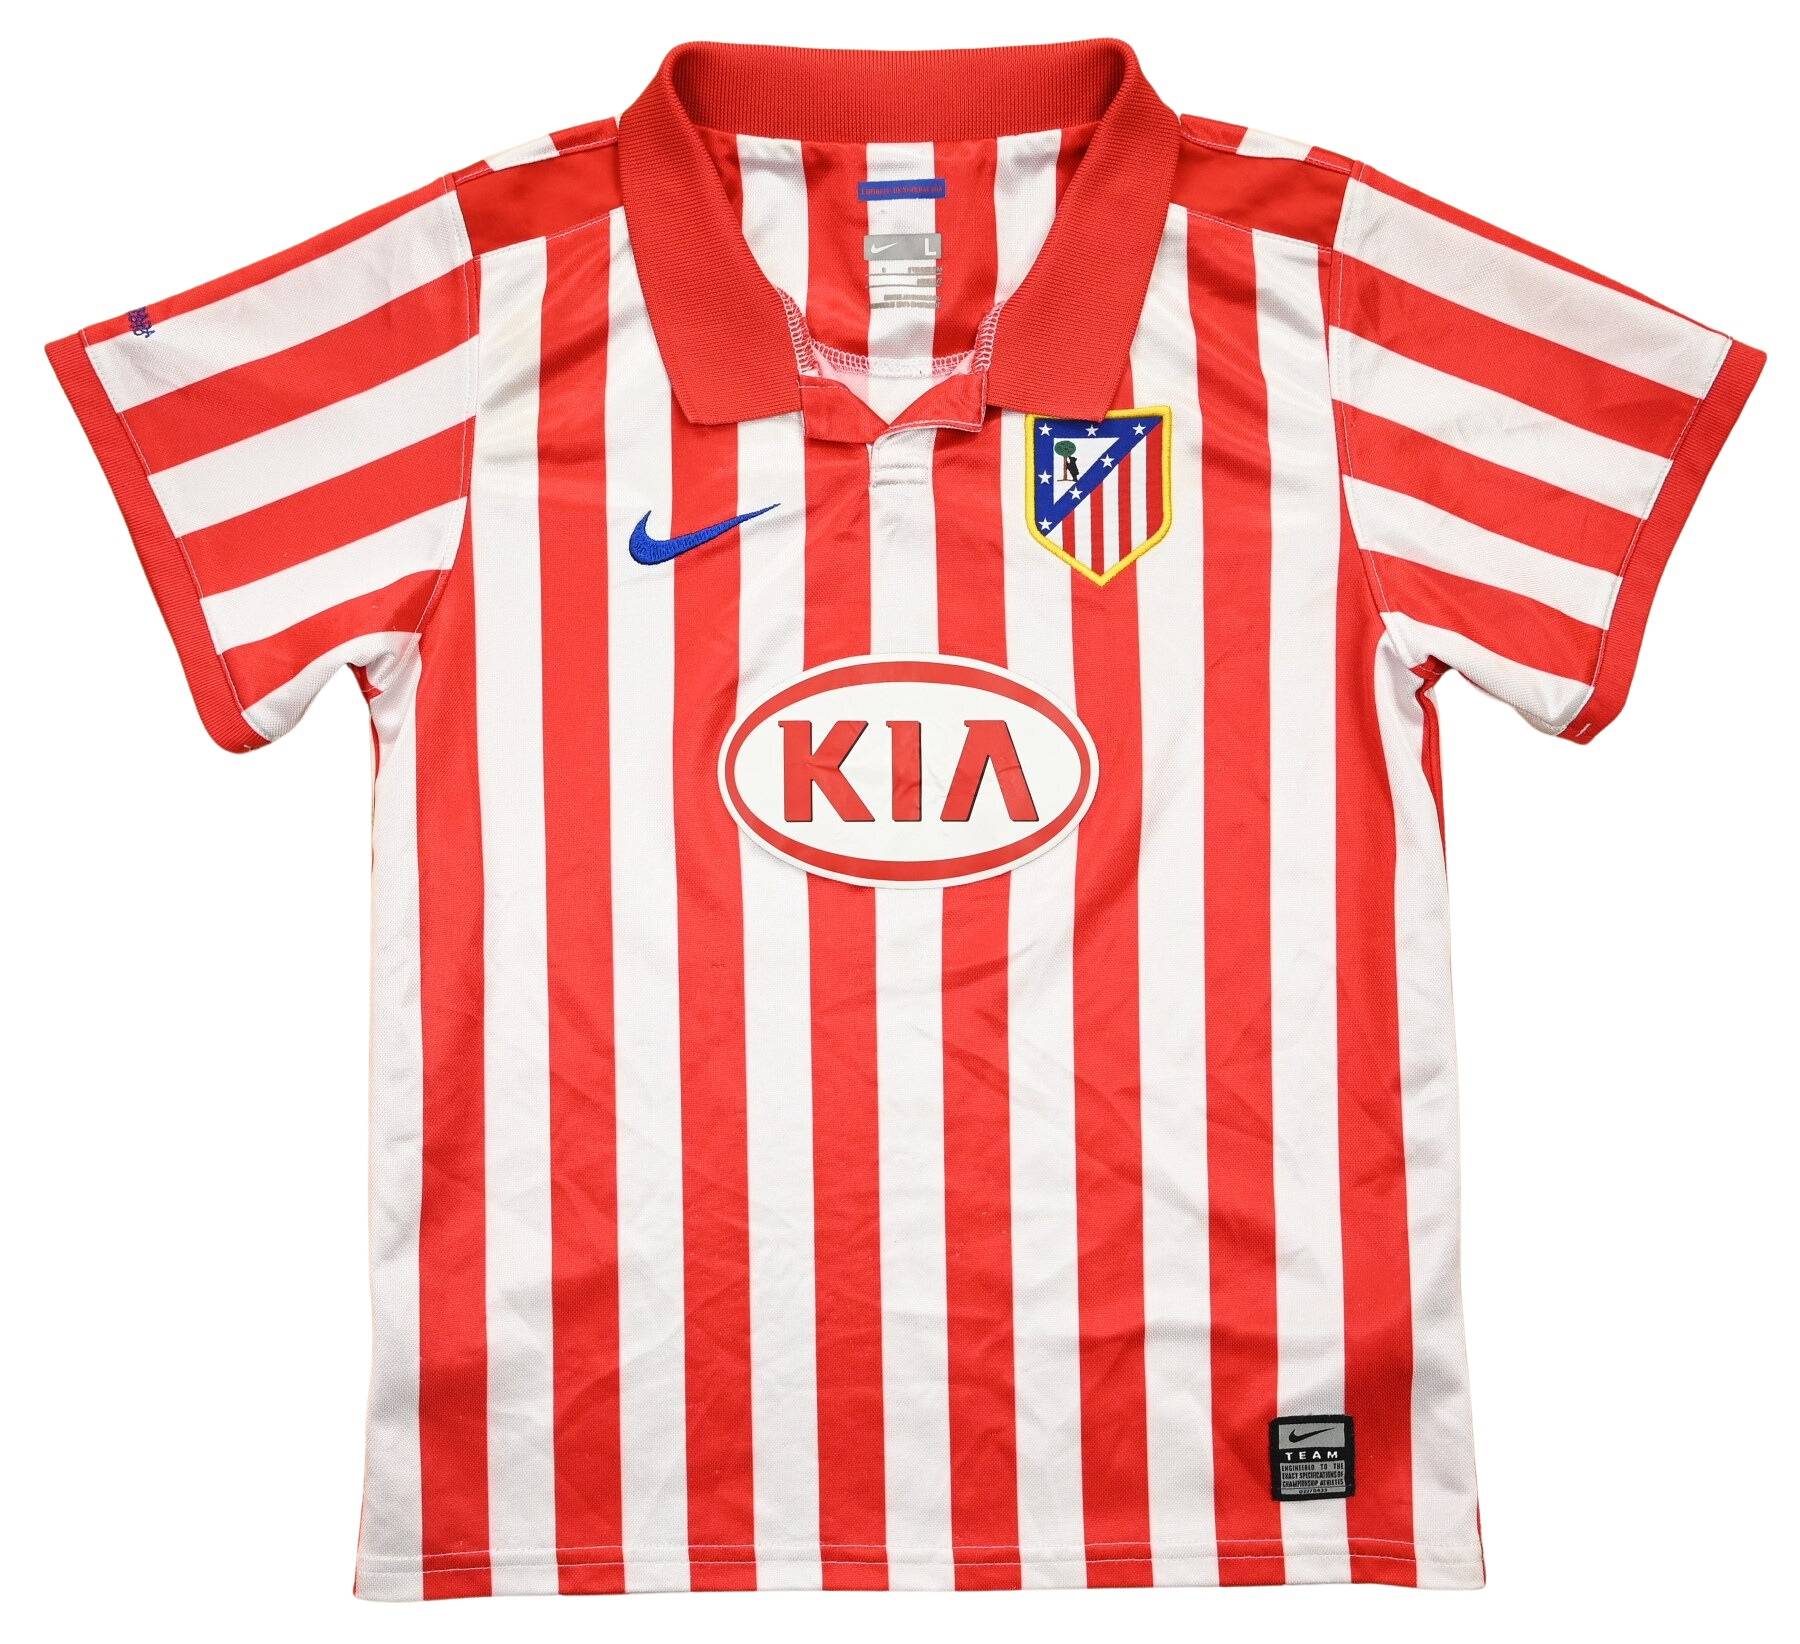 Club Atletico General Lamadrid Home Camiseta de Fútbol 2009 - 2010.  Sponsored by La Nueva Seguros